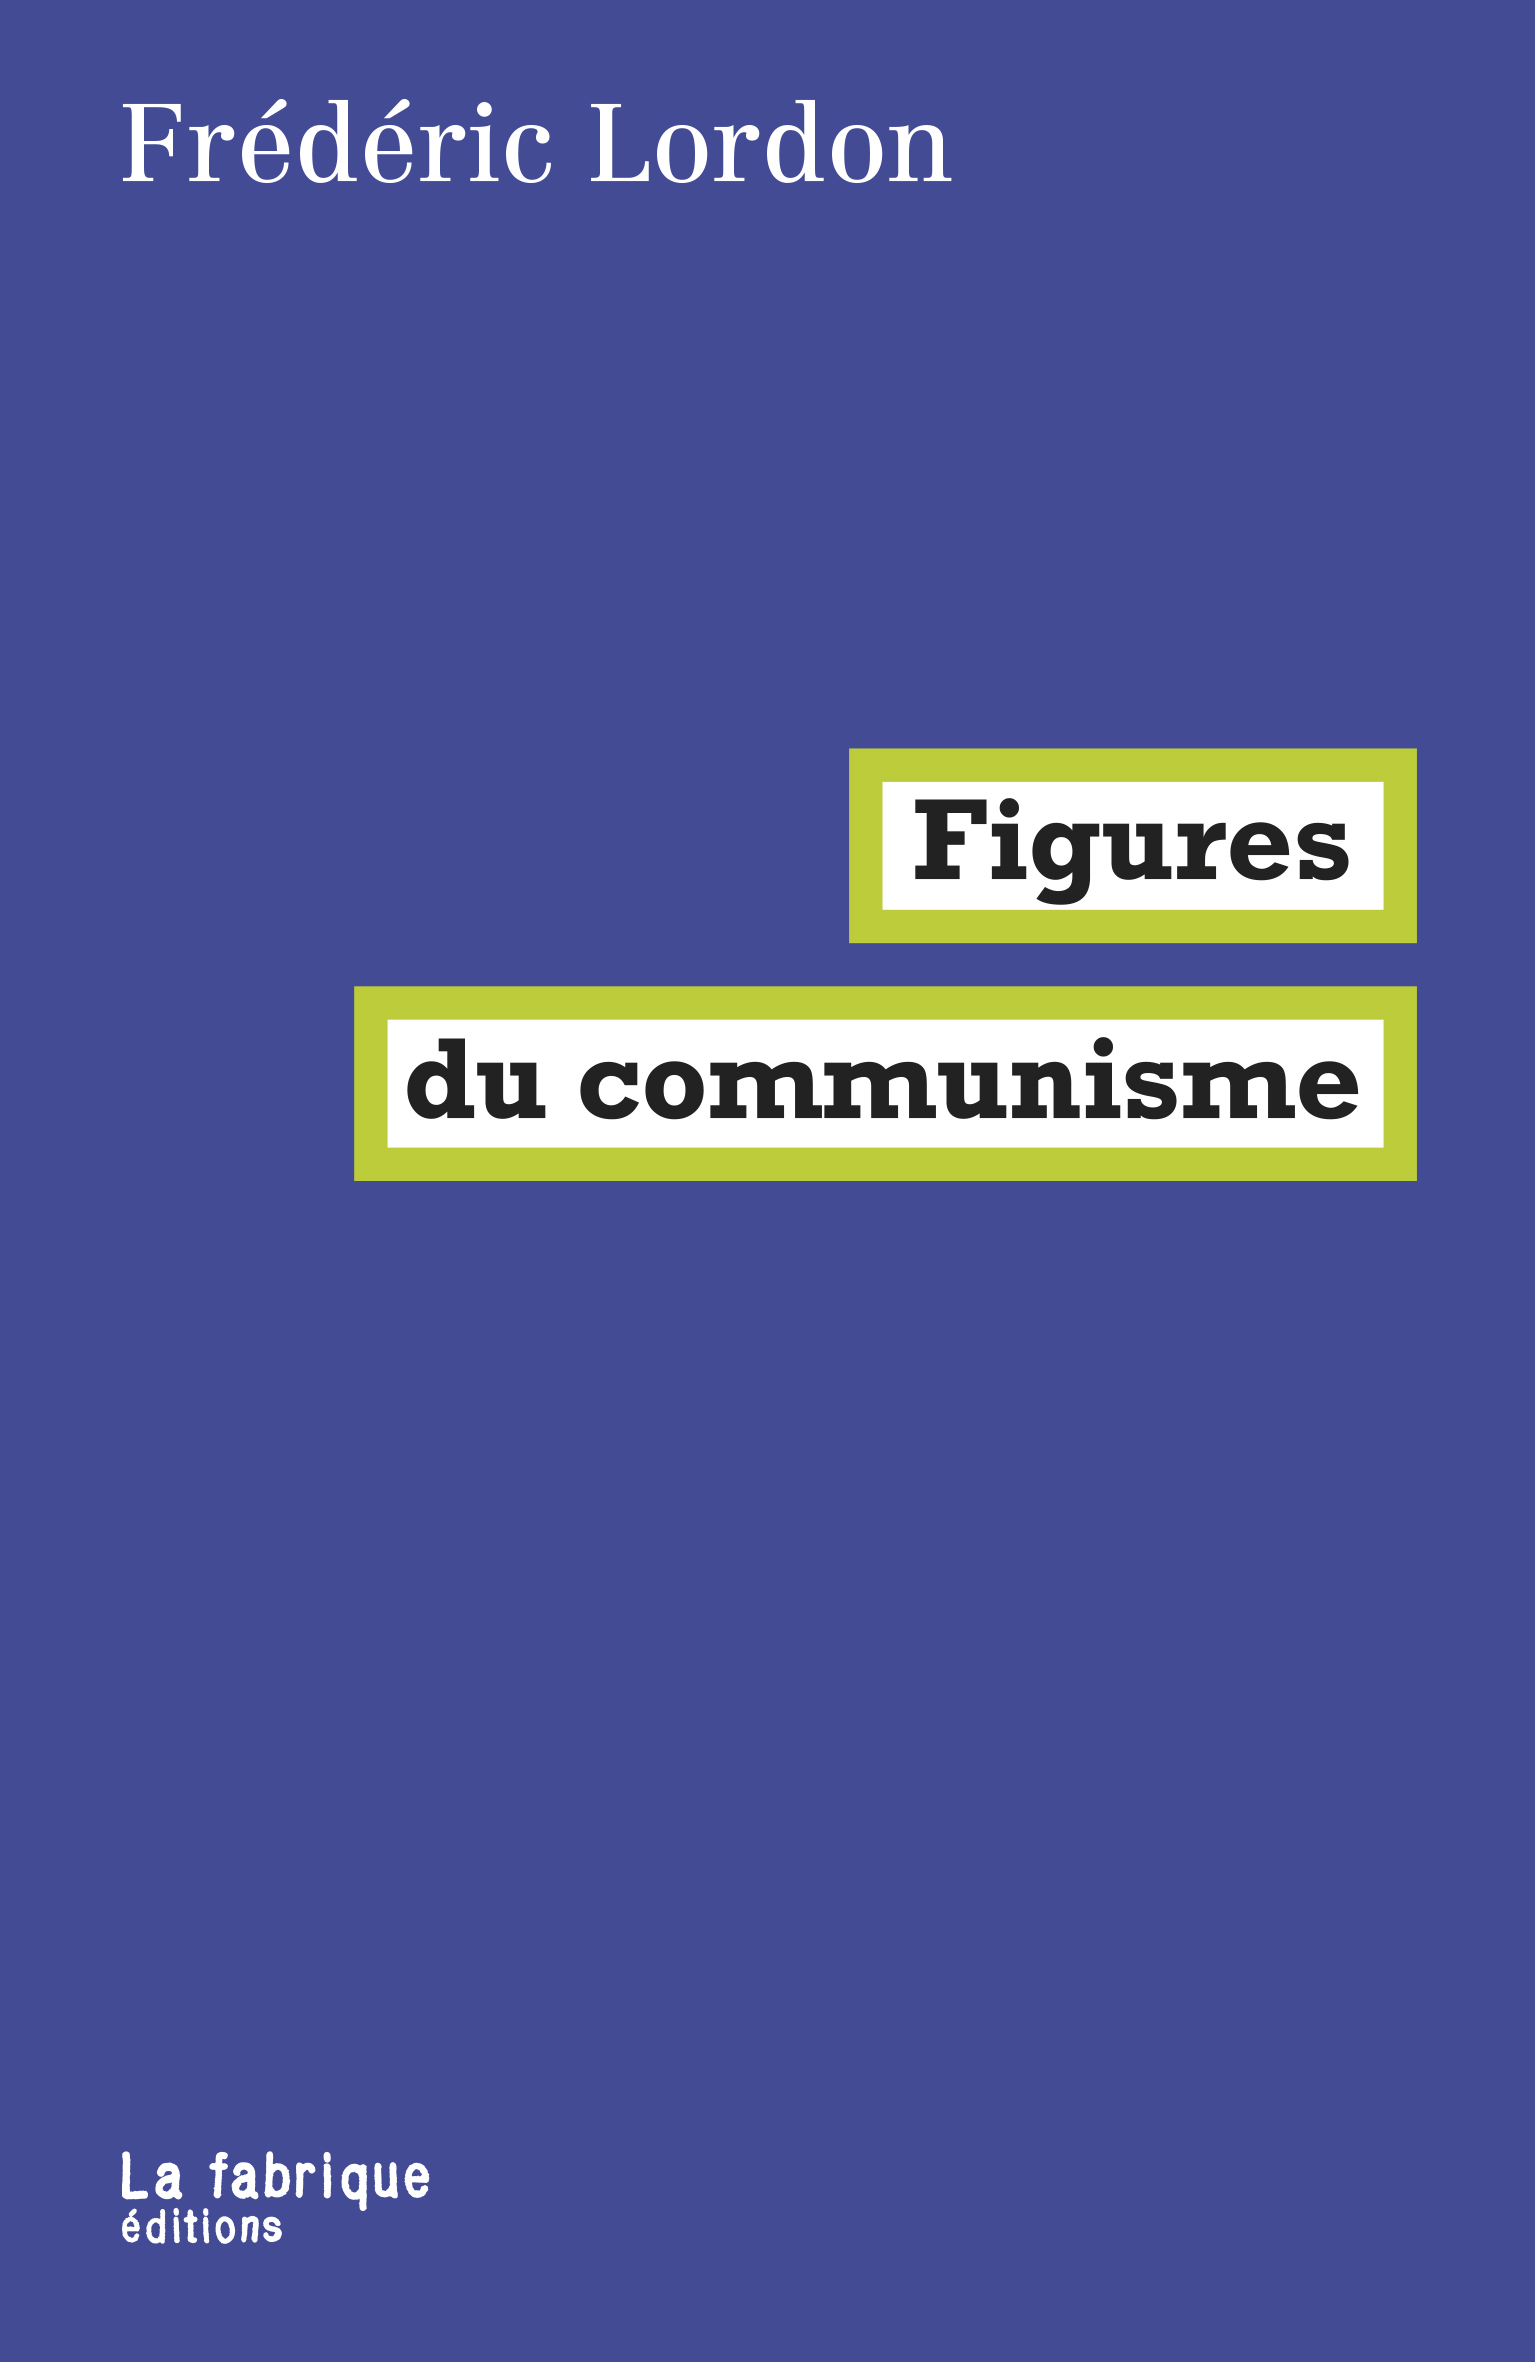 Imagen de portada del libro Figures du communisme